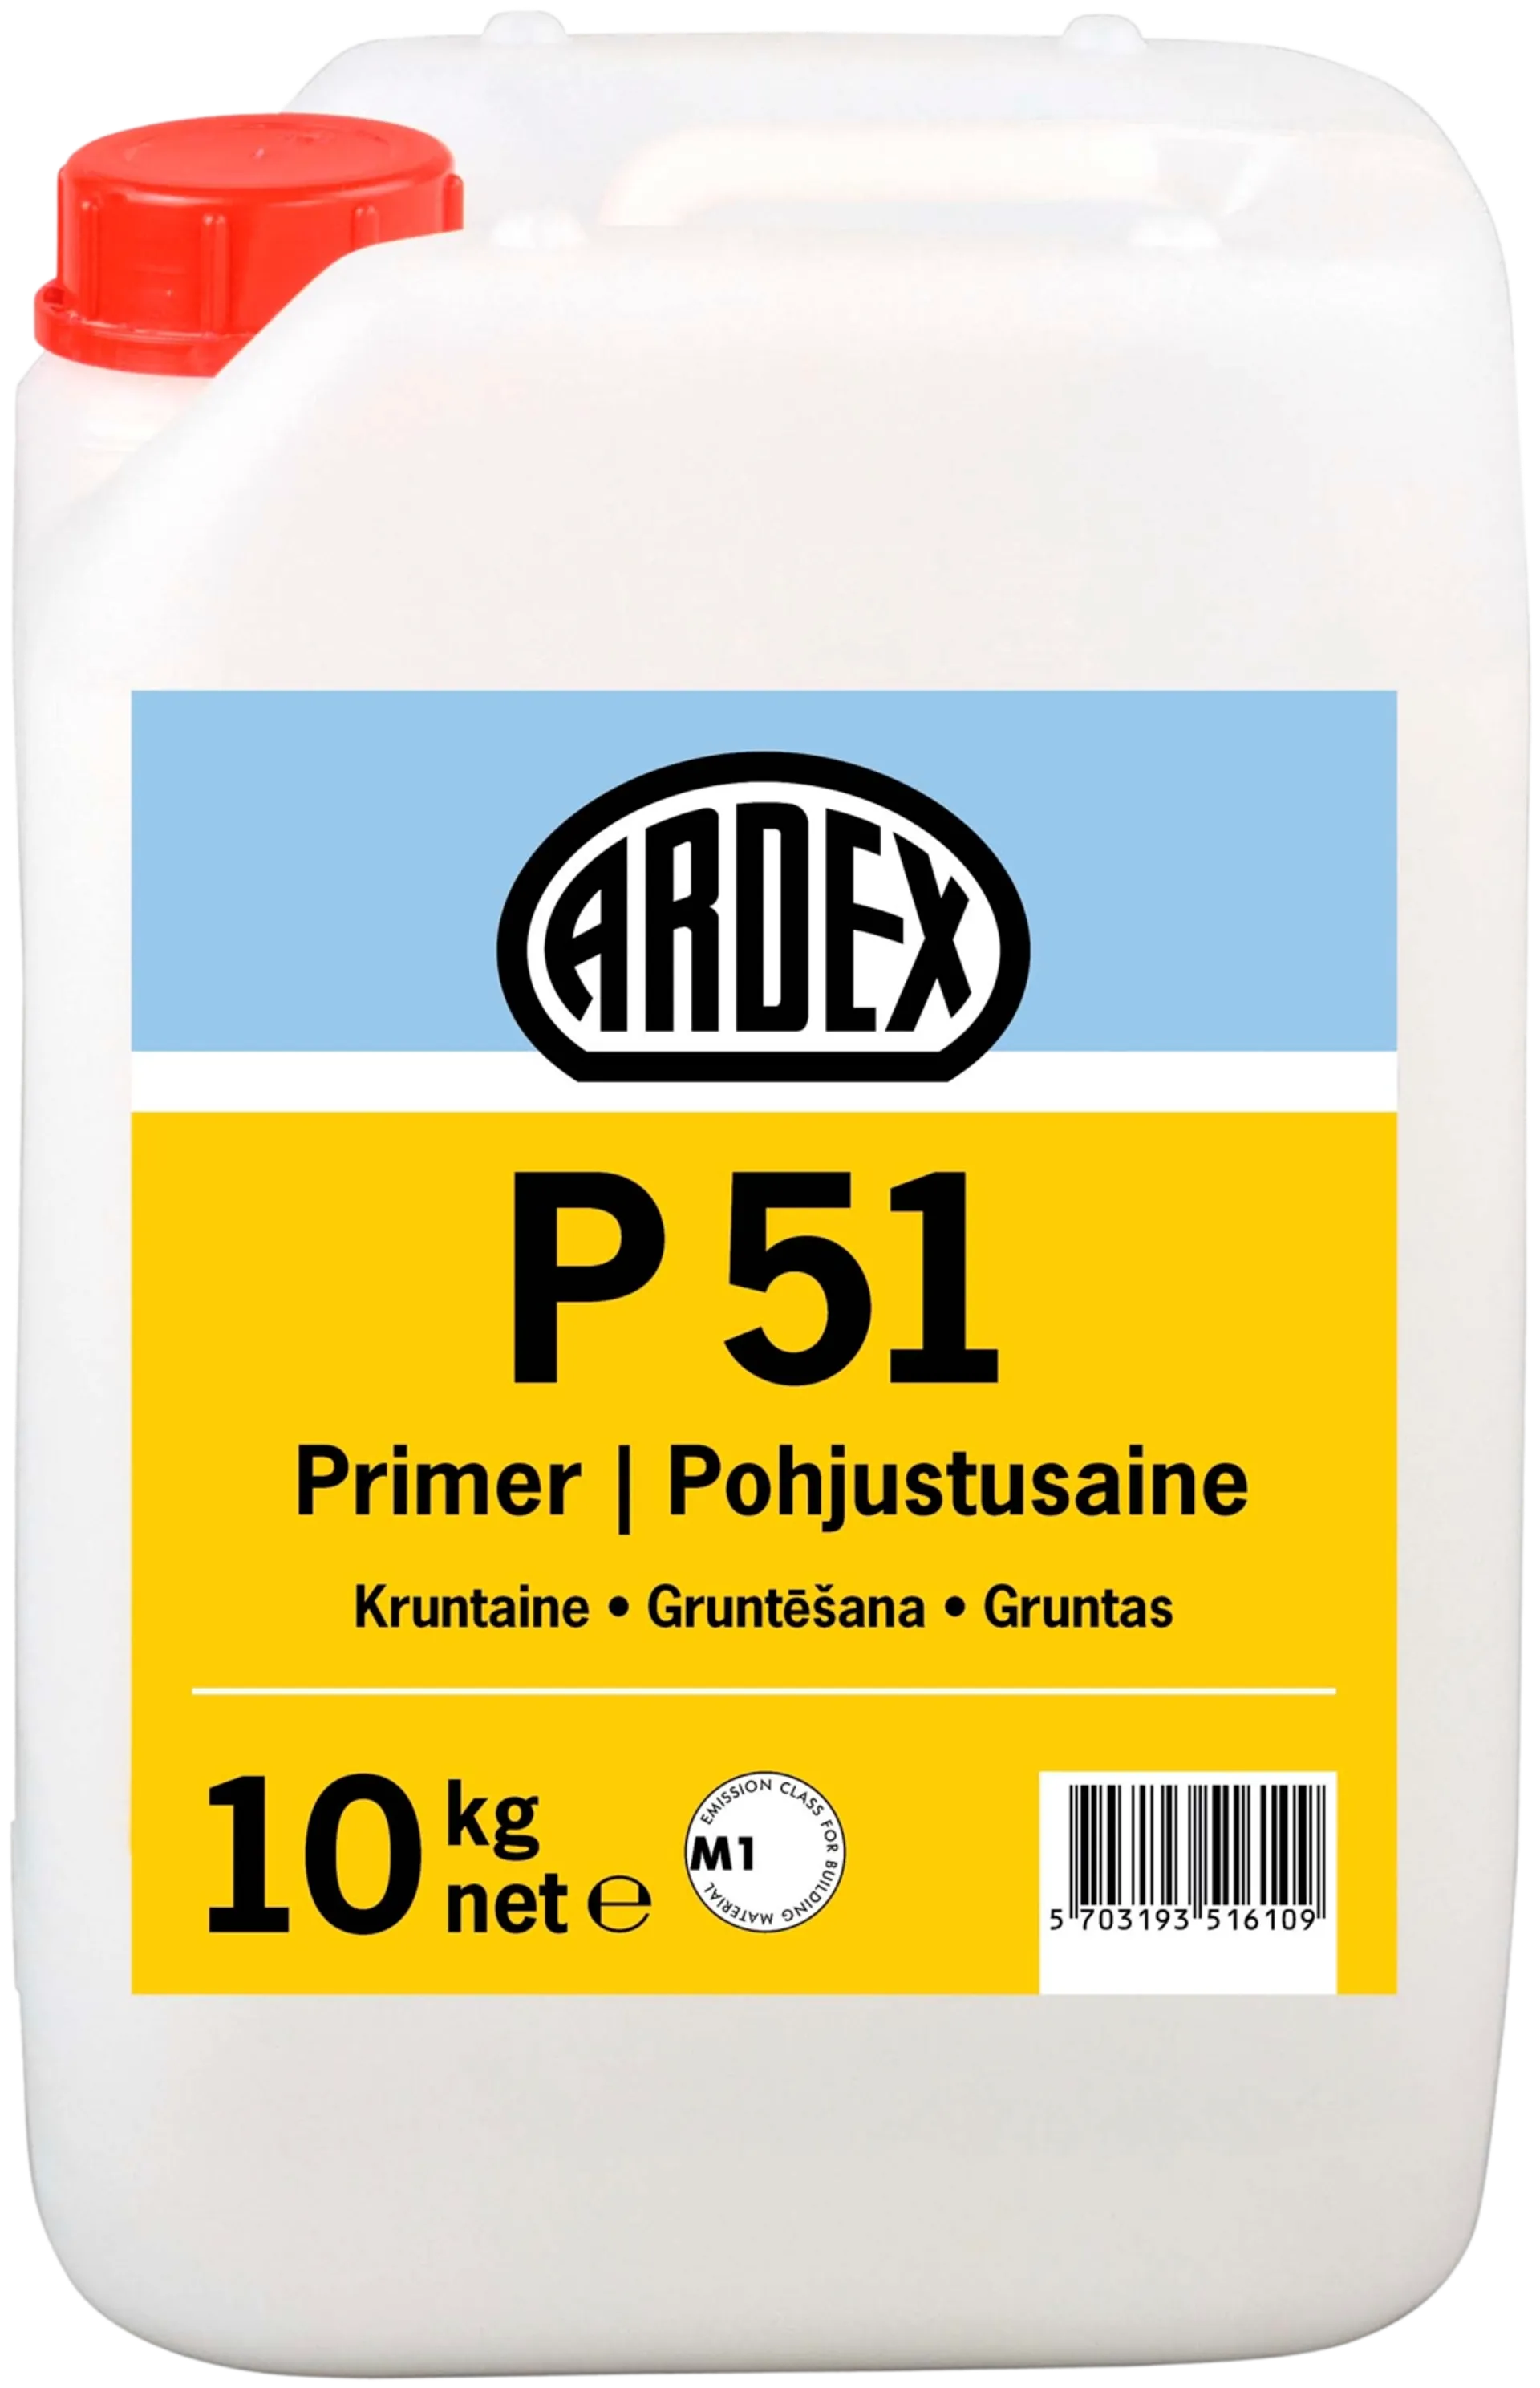 Ardex pohjustusaine P 51